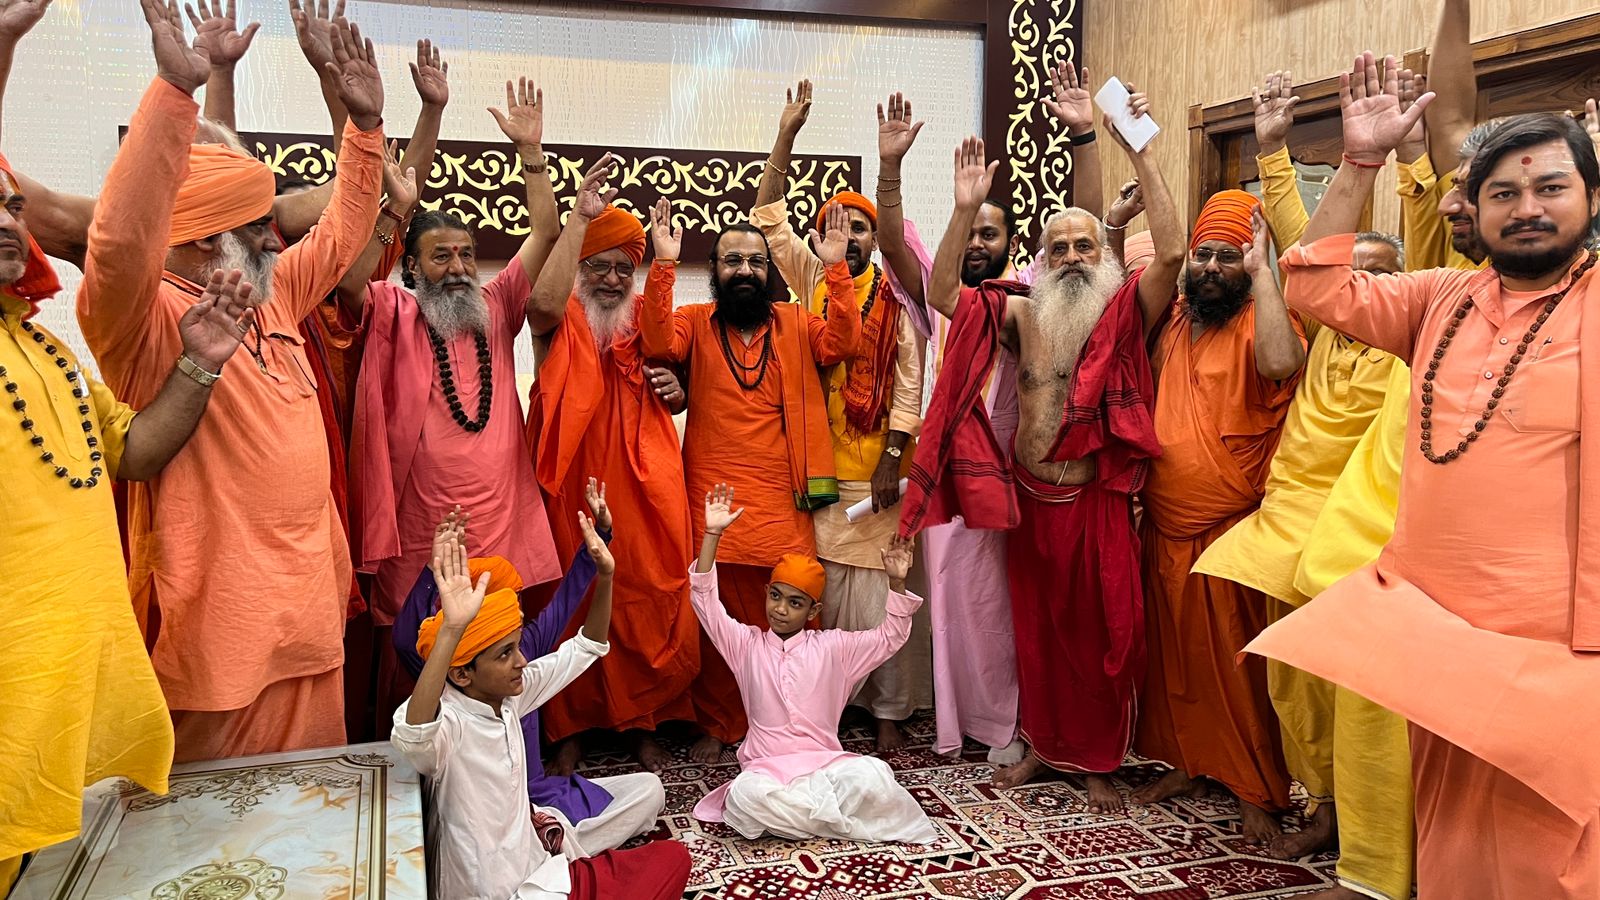 Uttarakhand: सनातन धर्म के प्रति अनर्गल टिप्पणियों का अखाड़ा परिषद और संत समिति ने किया कड़ा विरोध, आंदोलन की दी चेतावनी